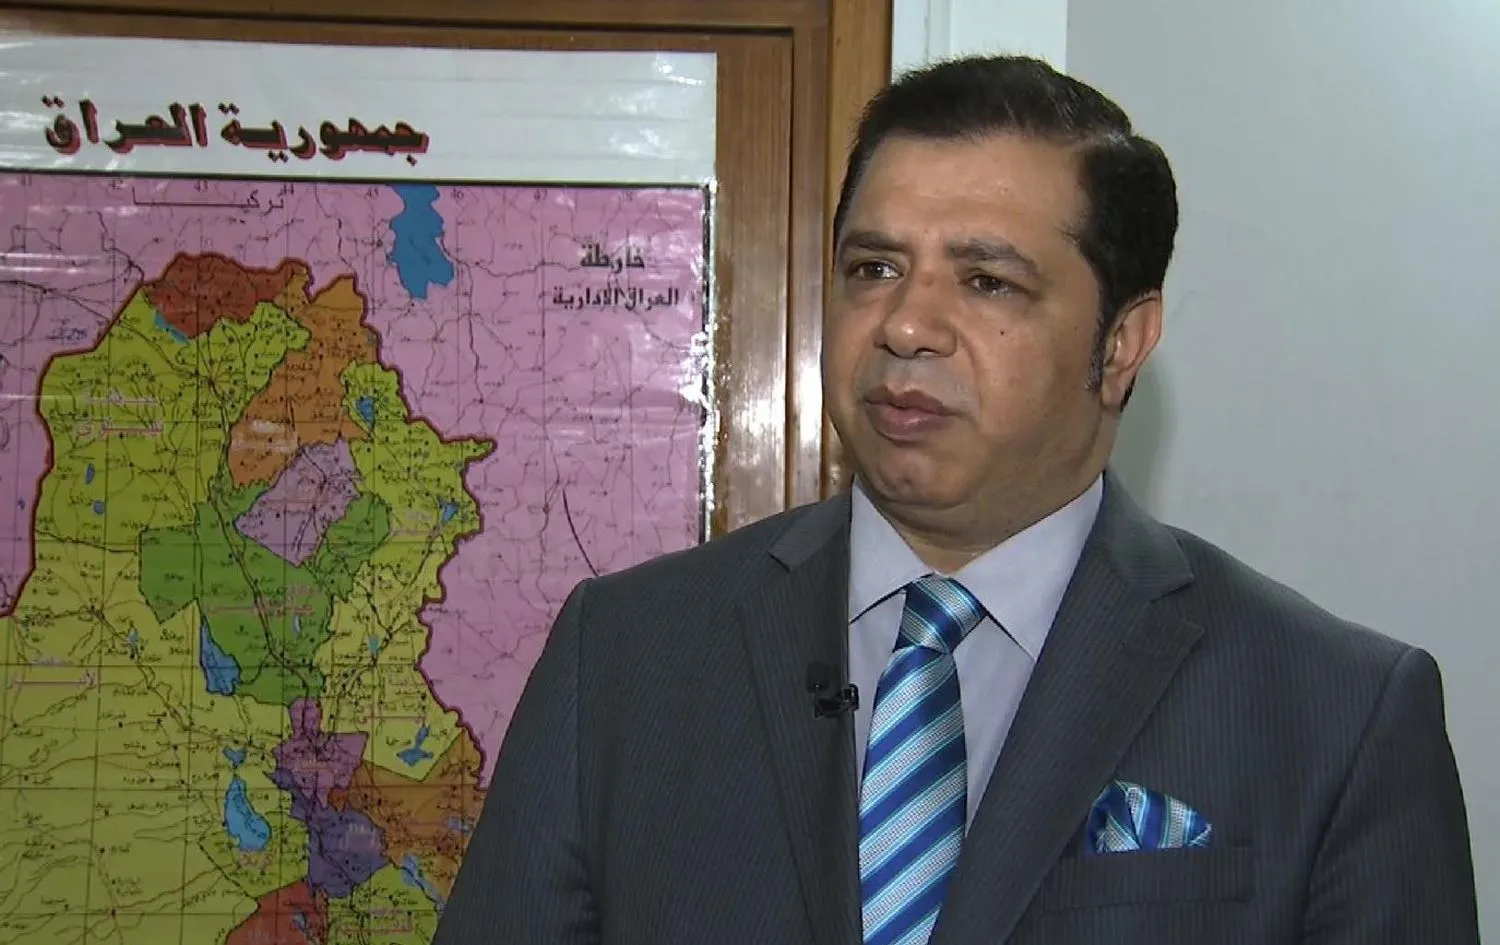 مسؤول عراقي يُلمح لمساعي الدفع باتجاه إعادة اللاجئين بزعم استقرار الوضع بسوريا